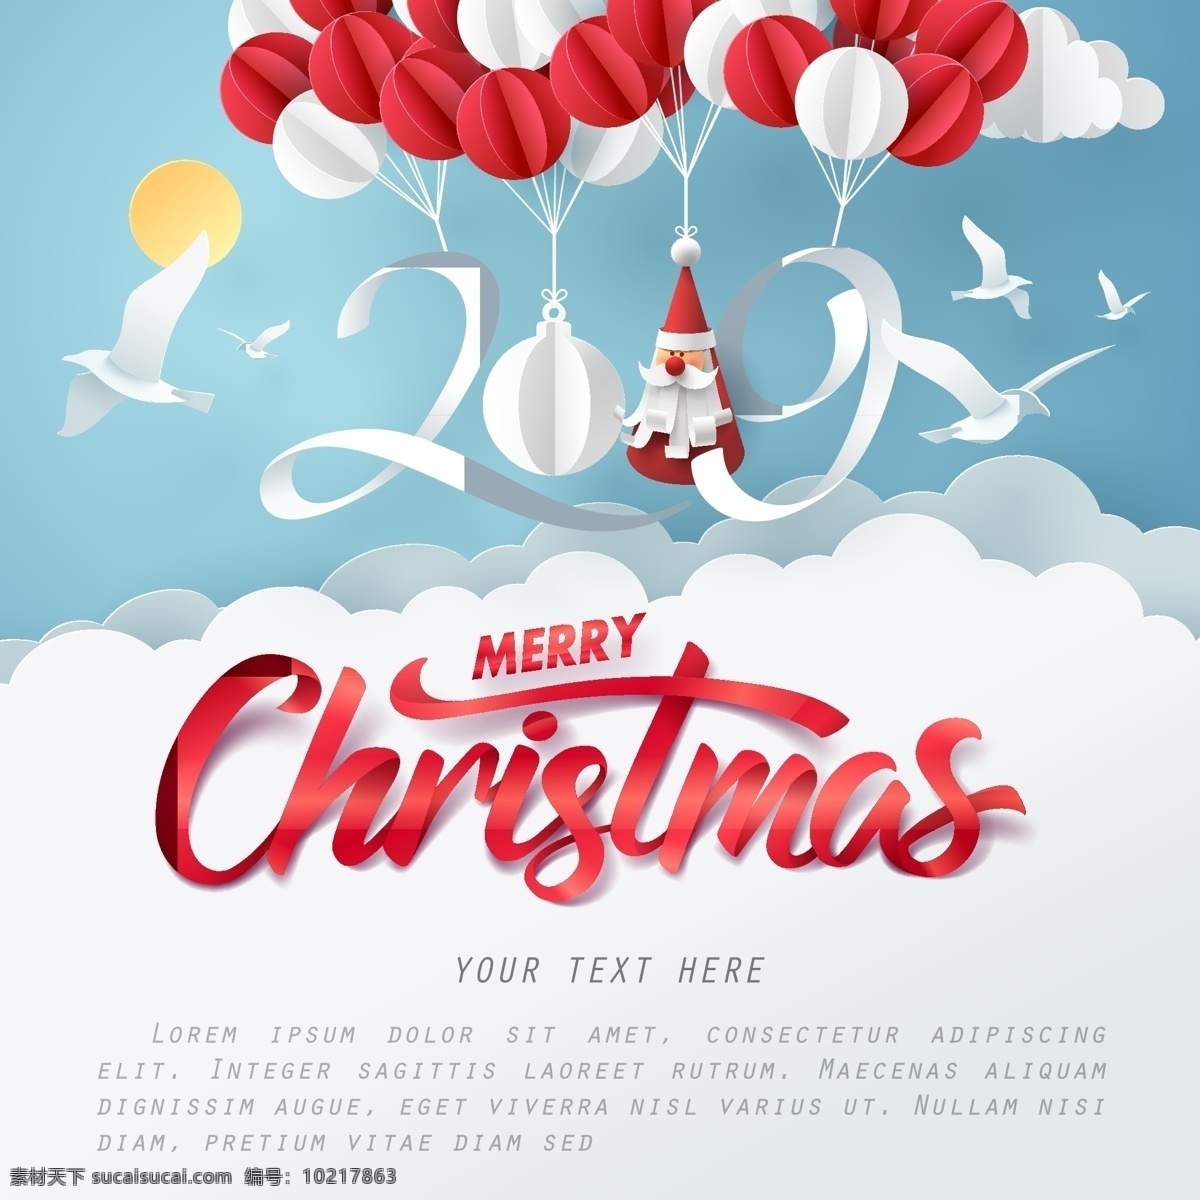 2019 圣诞 新年 海报 圣诞节 圣诞节快乐 气球 2019字体 圣诞老人 圣诞节海报 圣诞节背景 圣诞节促销 圣诞节素材